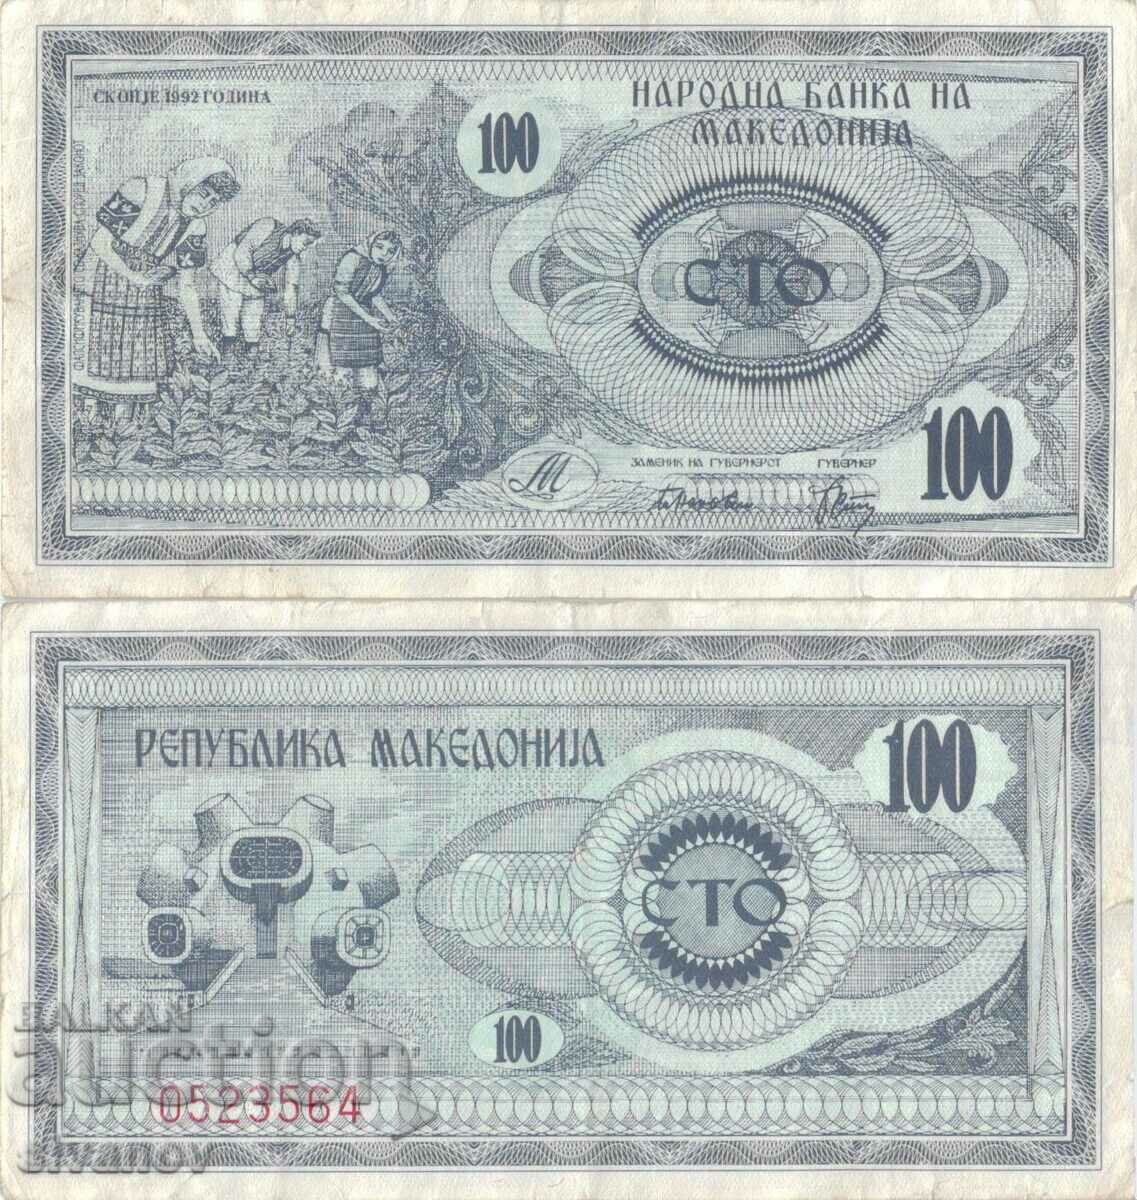 Macedonia 100 denari 1992 bancnota #5210